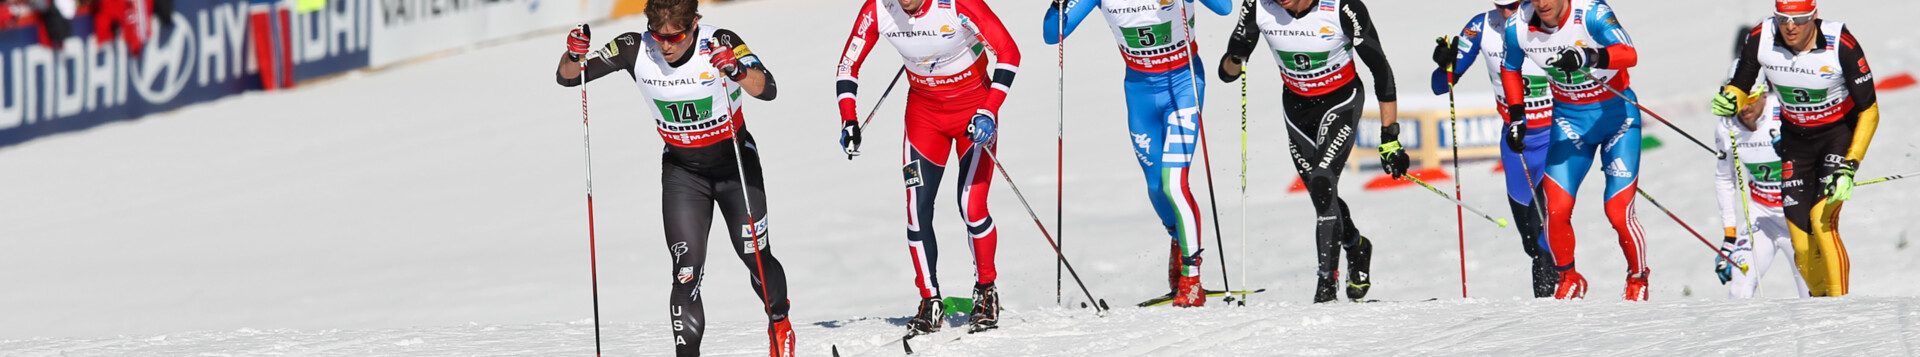 La culla dello sci nordico italiano | © Nordic-Ski-WM-Val-di-Fiemme-CO-Fiemme-Ski-World-Cup